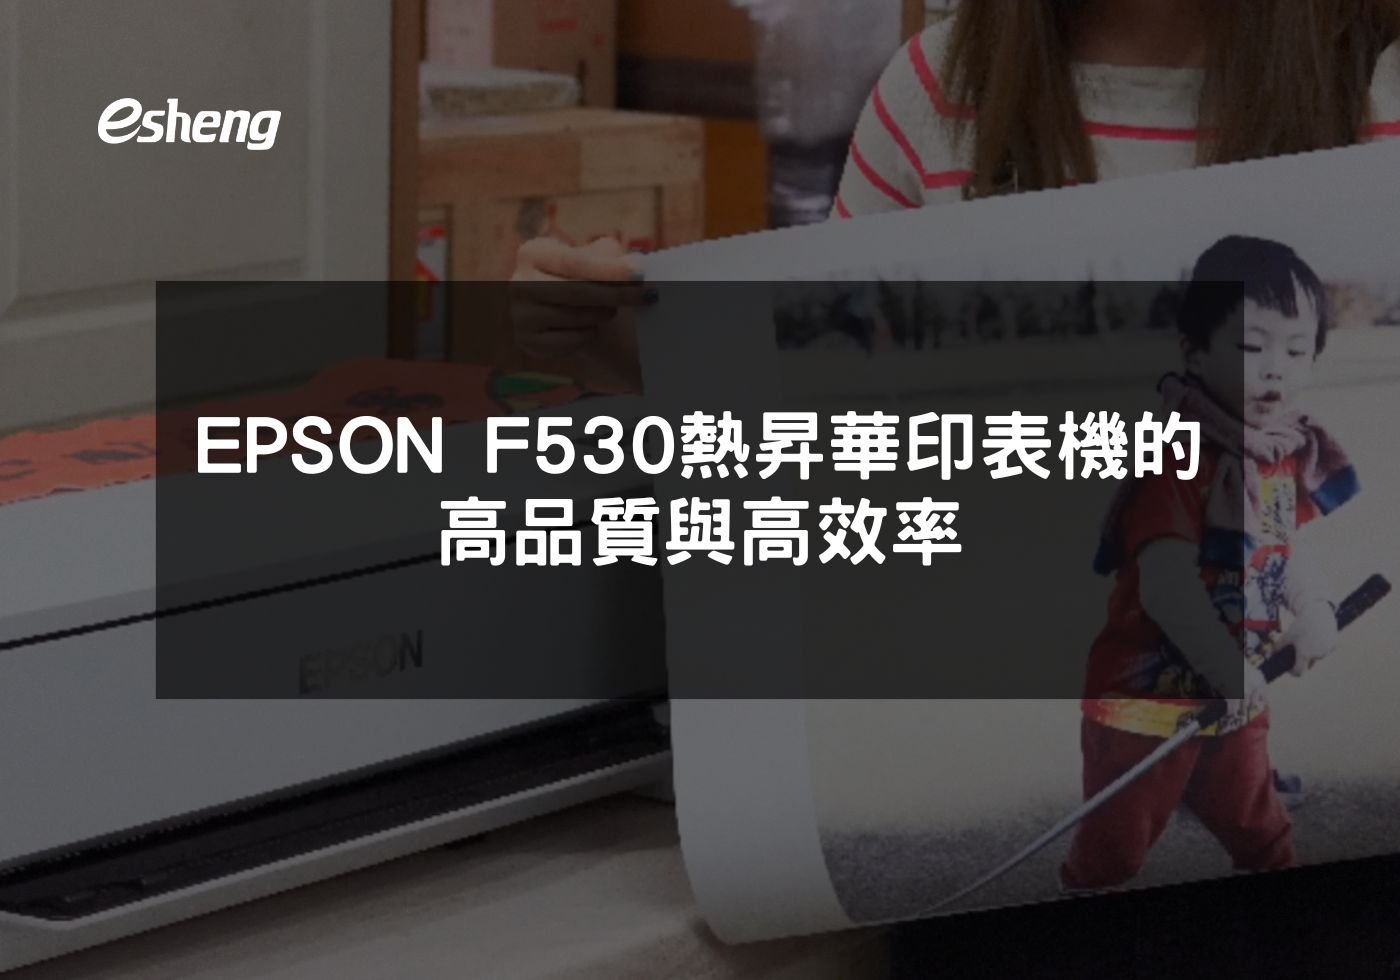 您目前正在查看 EPSON F530熱昇華印表機的高品質與高效率